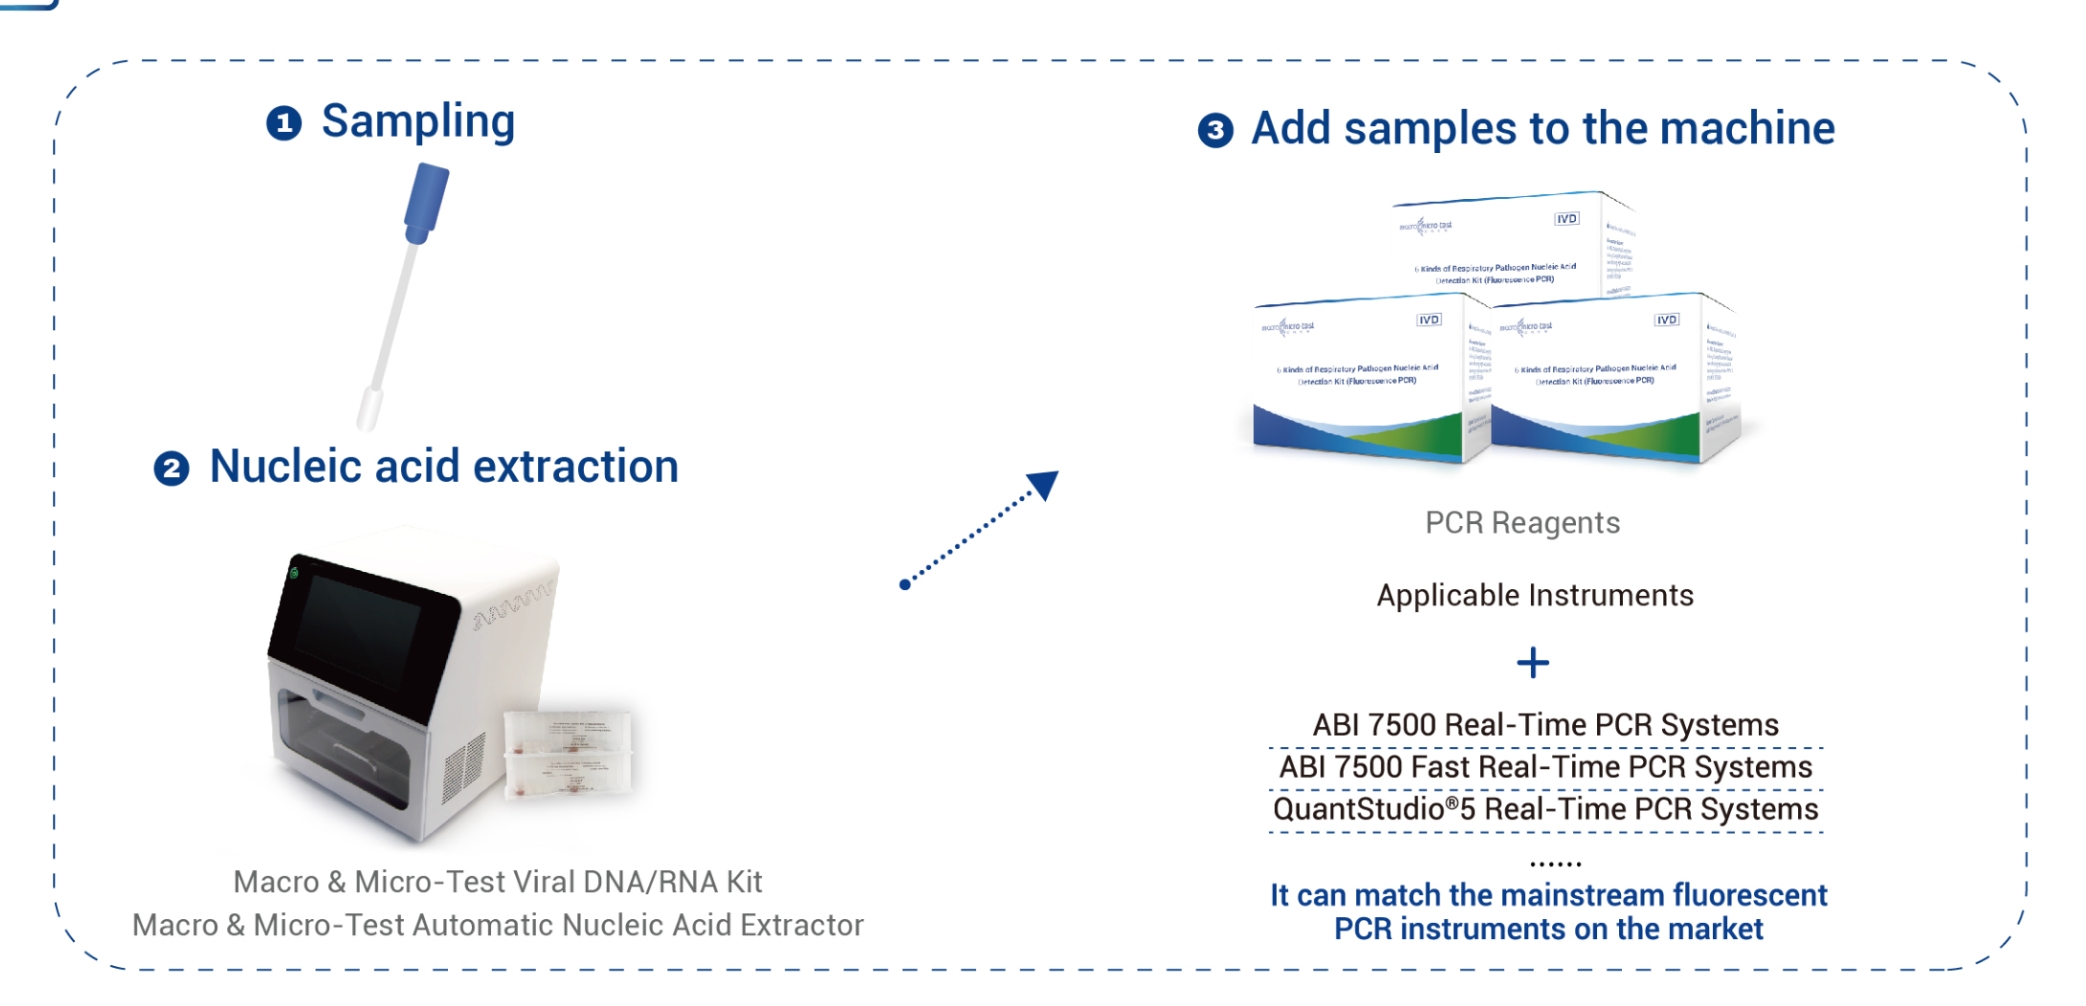 Sáu loại bộ phát hiện axit nucleic mầm bệnh đường hô hấp (PCR huỳnh quang)